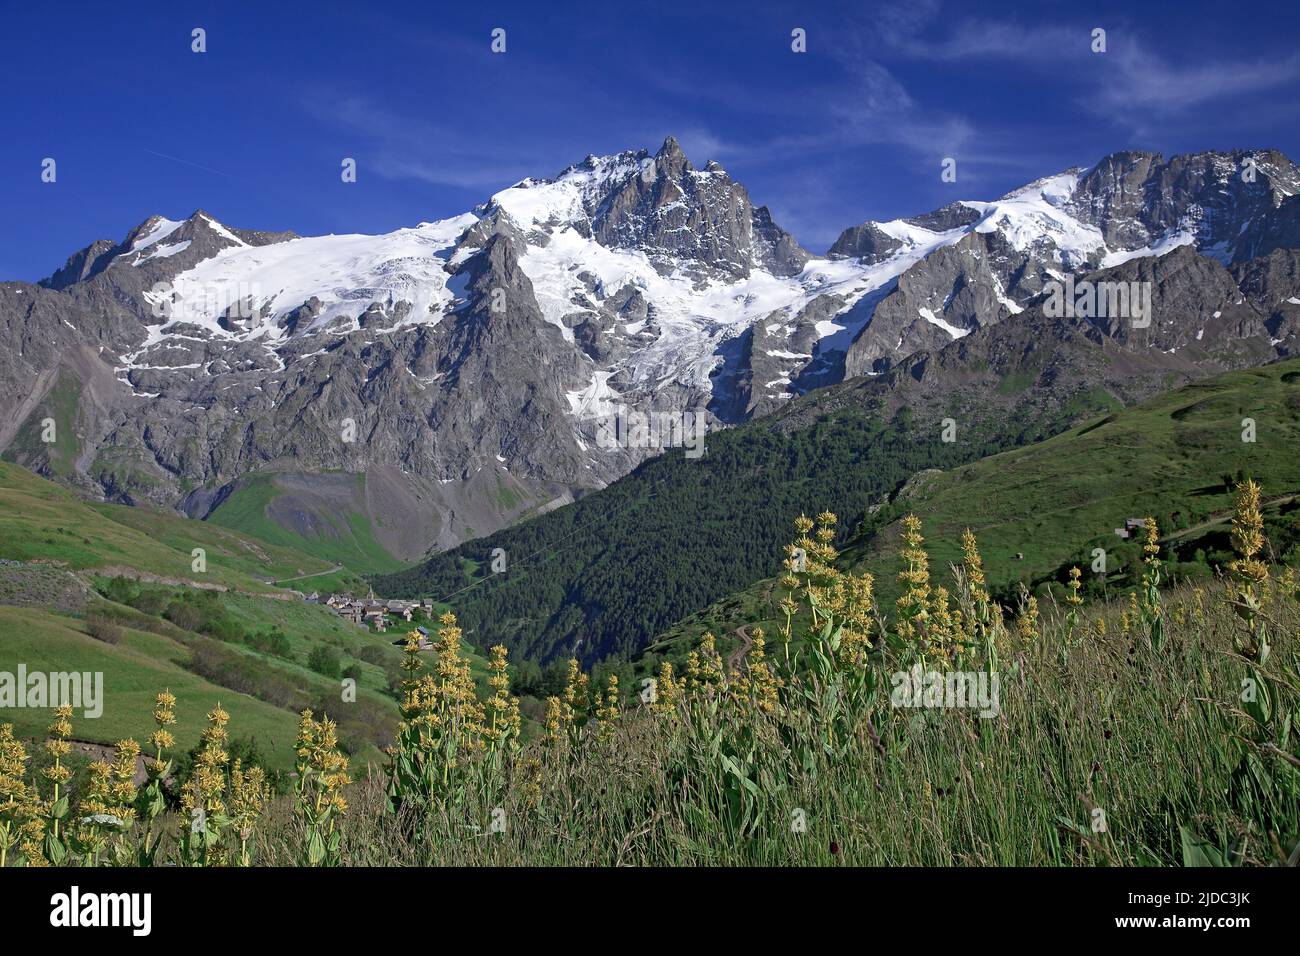 France, Hautes-Alpes La Grave, Meije massif, Ecrins National Park Stock Photo